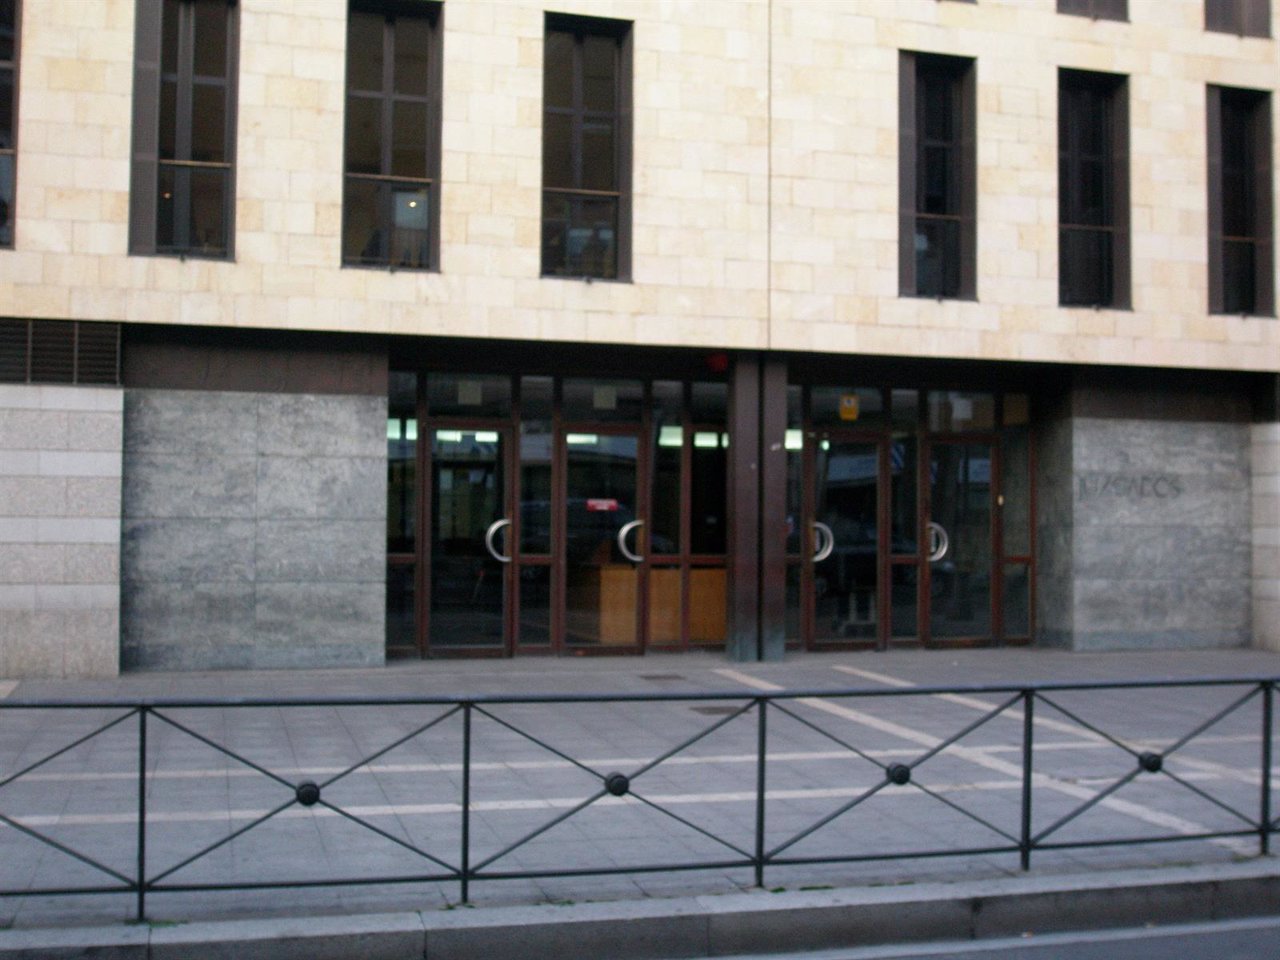 Edificio de los juzgados, escenario del juicio.